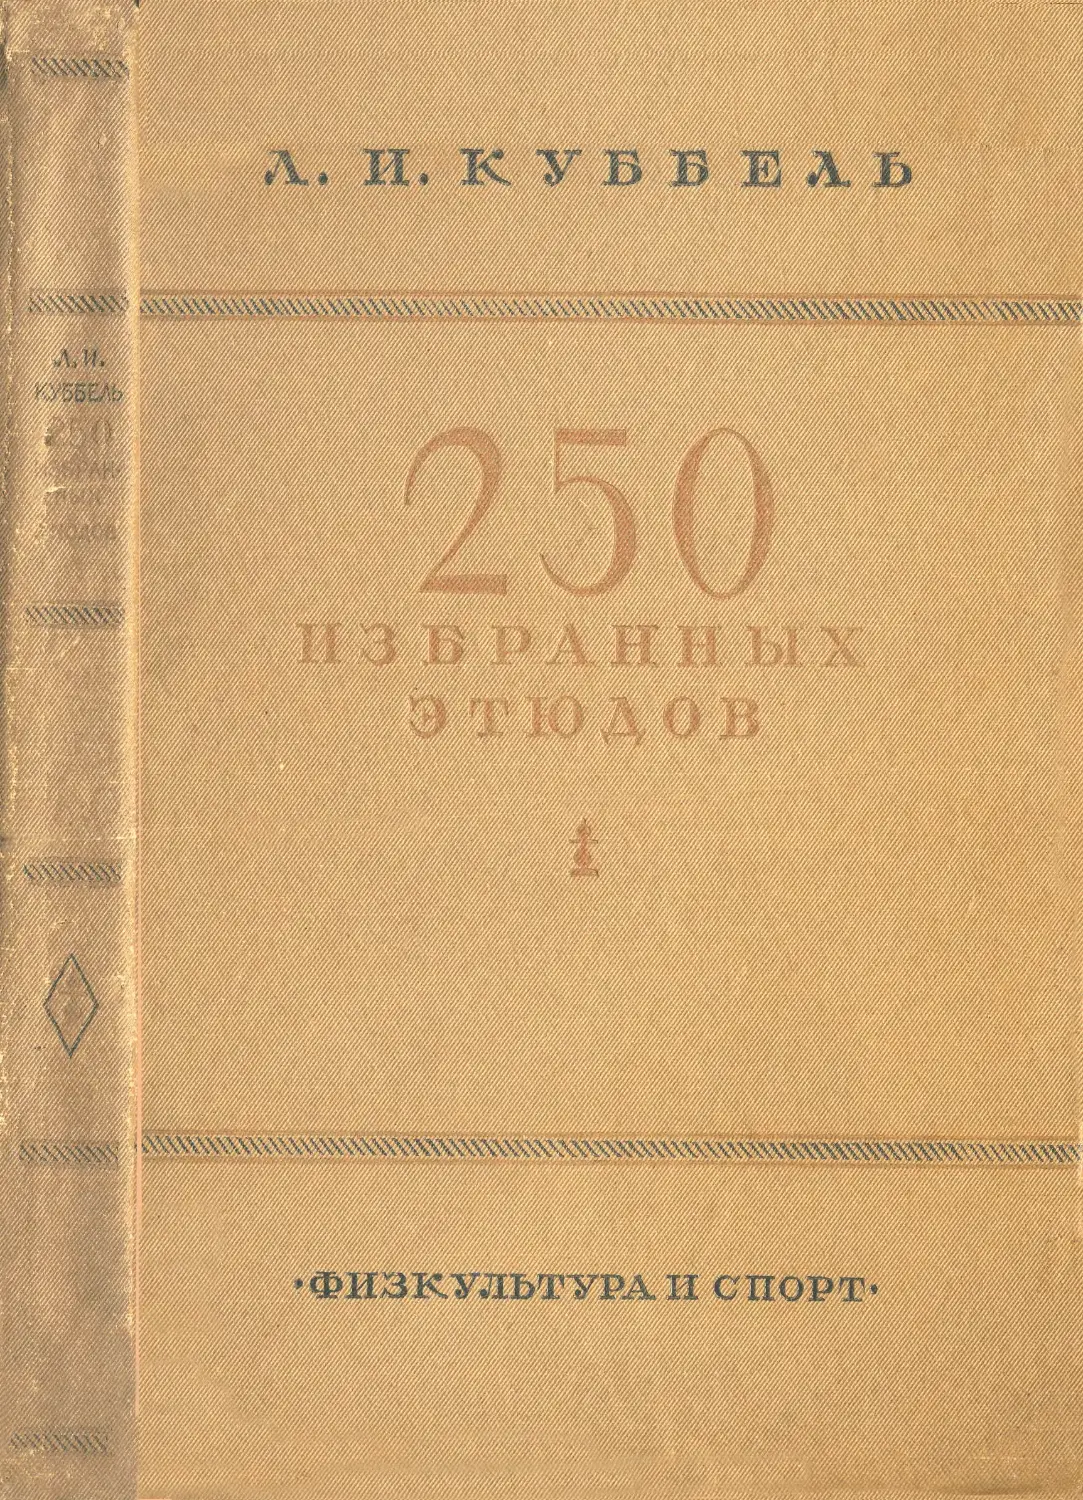 Куббель Л.И. 250 избранных этюдов